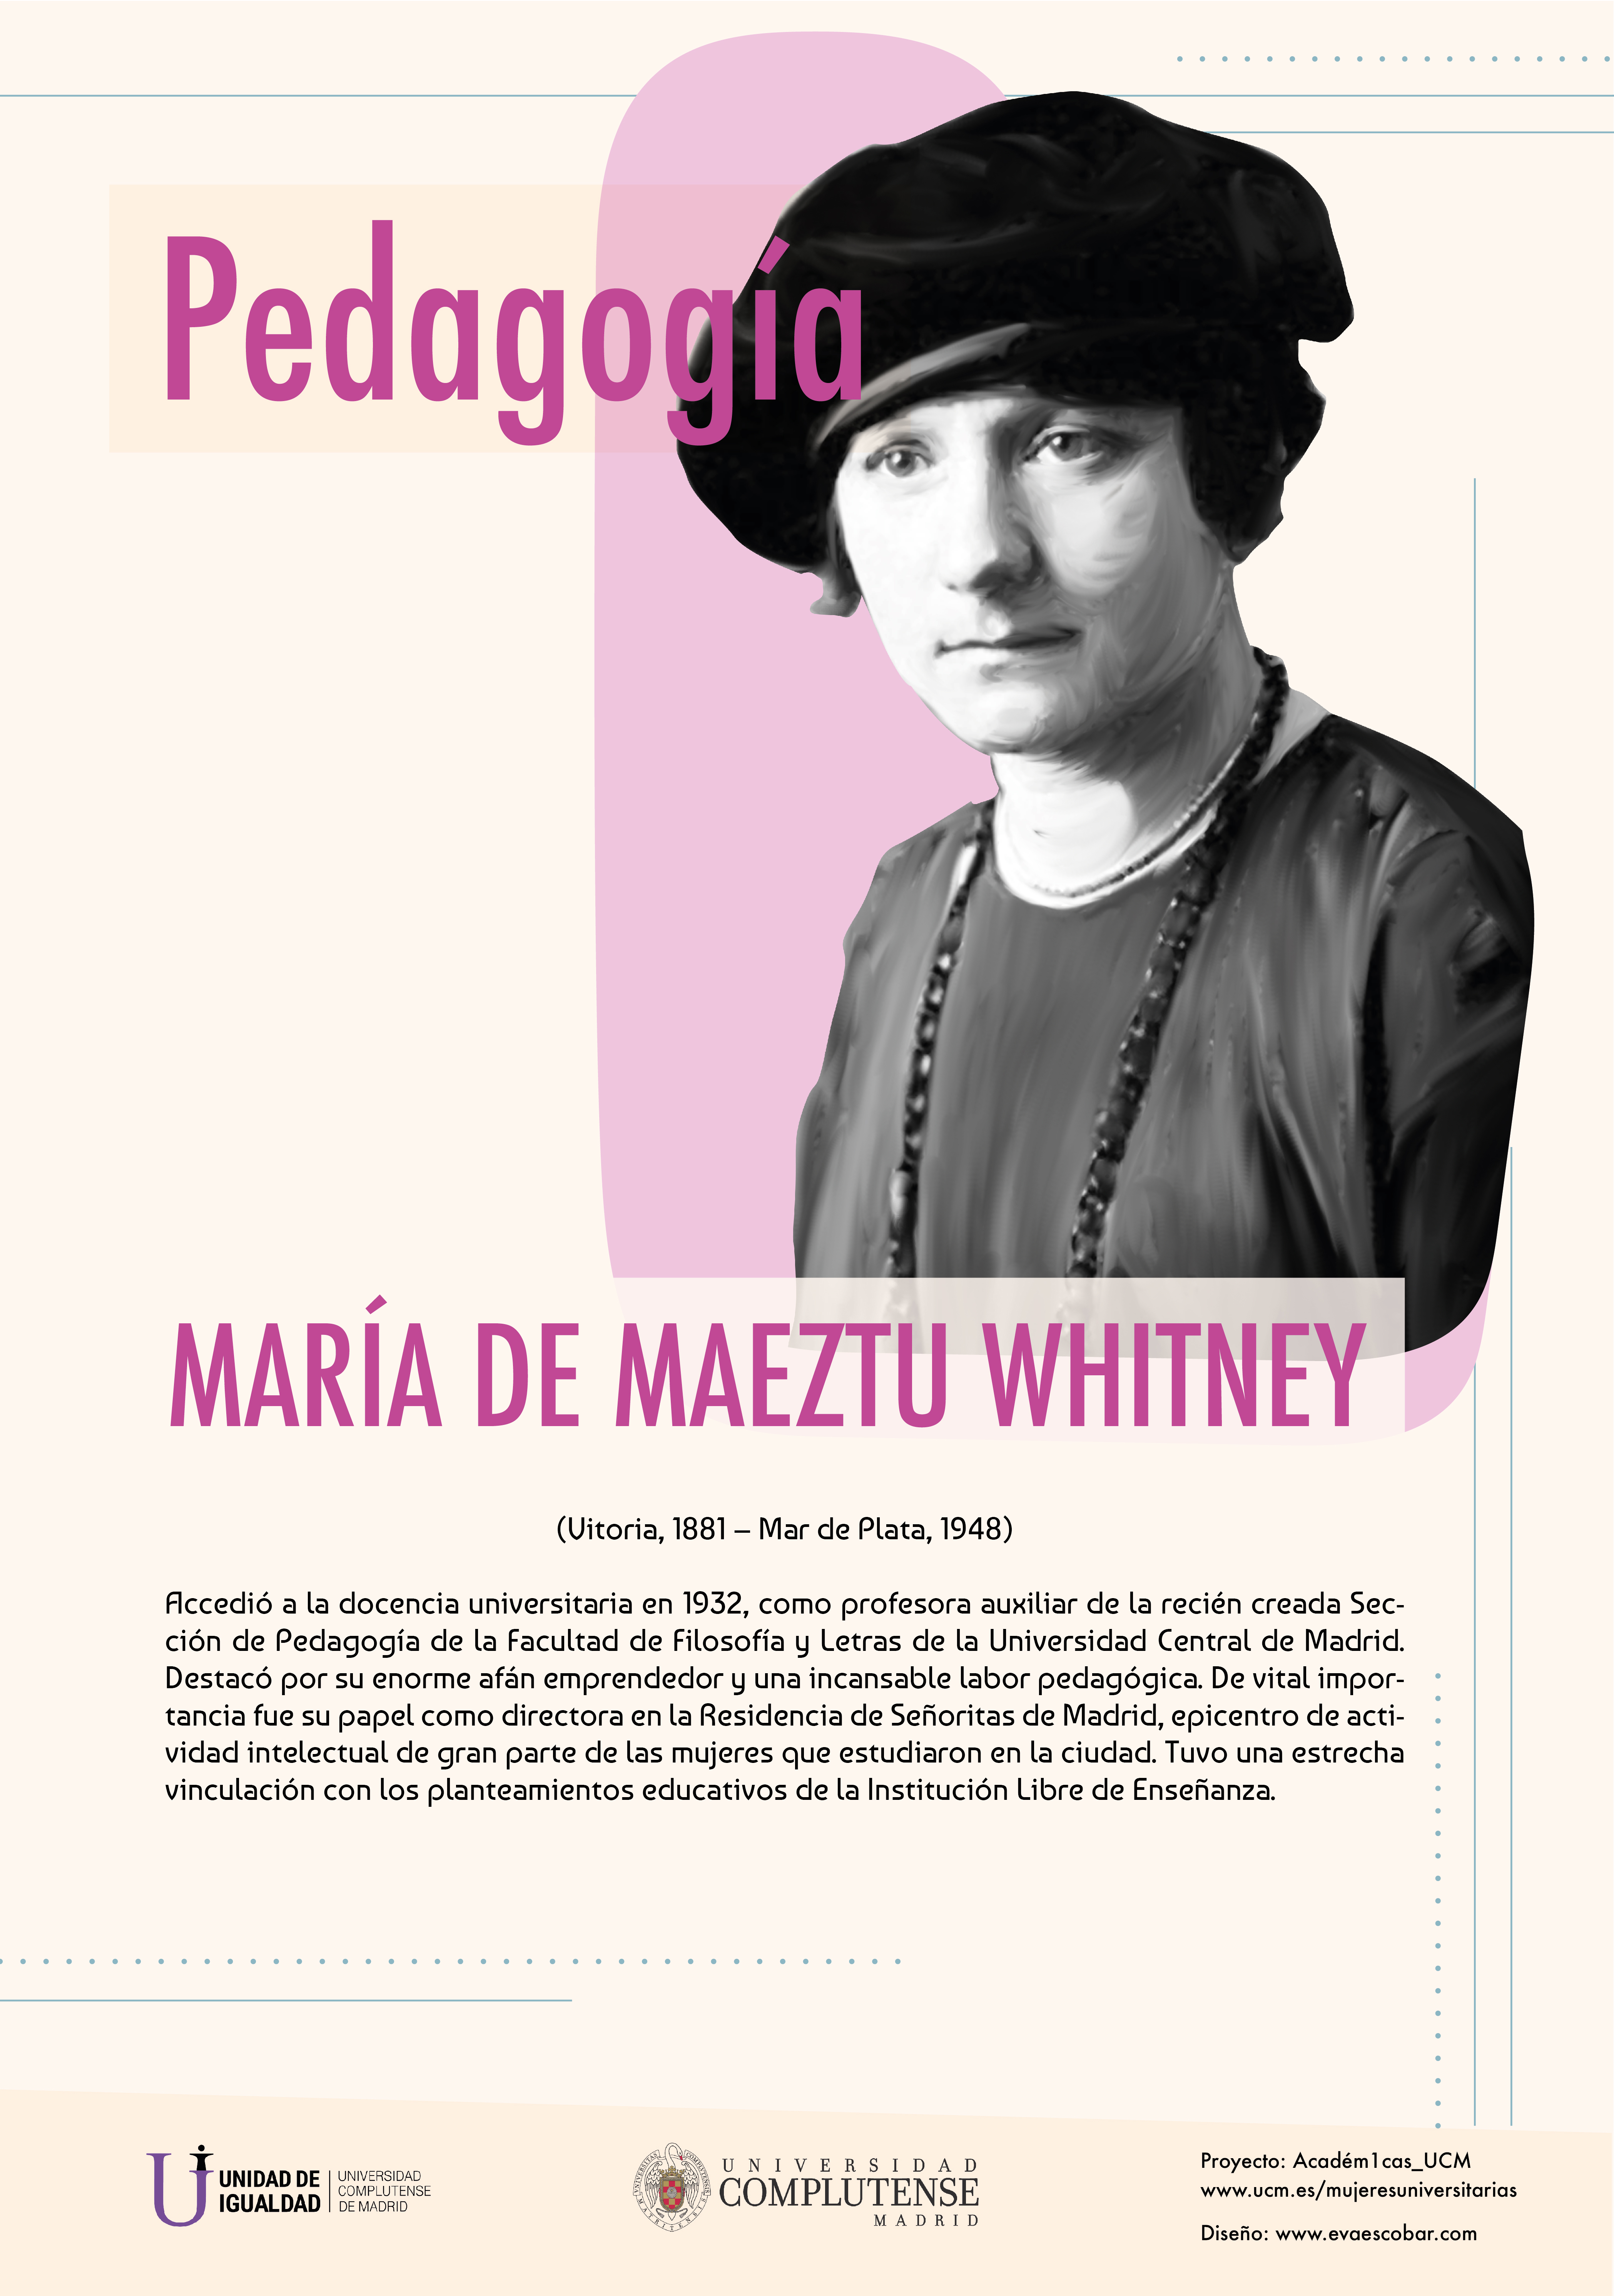 Cartel informativo sobre María de Maeztu y Whitney